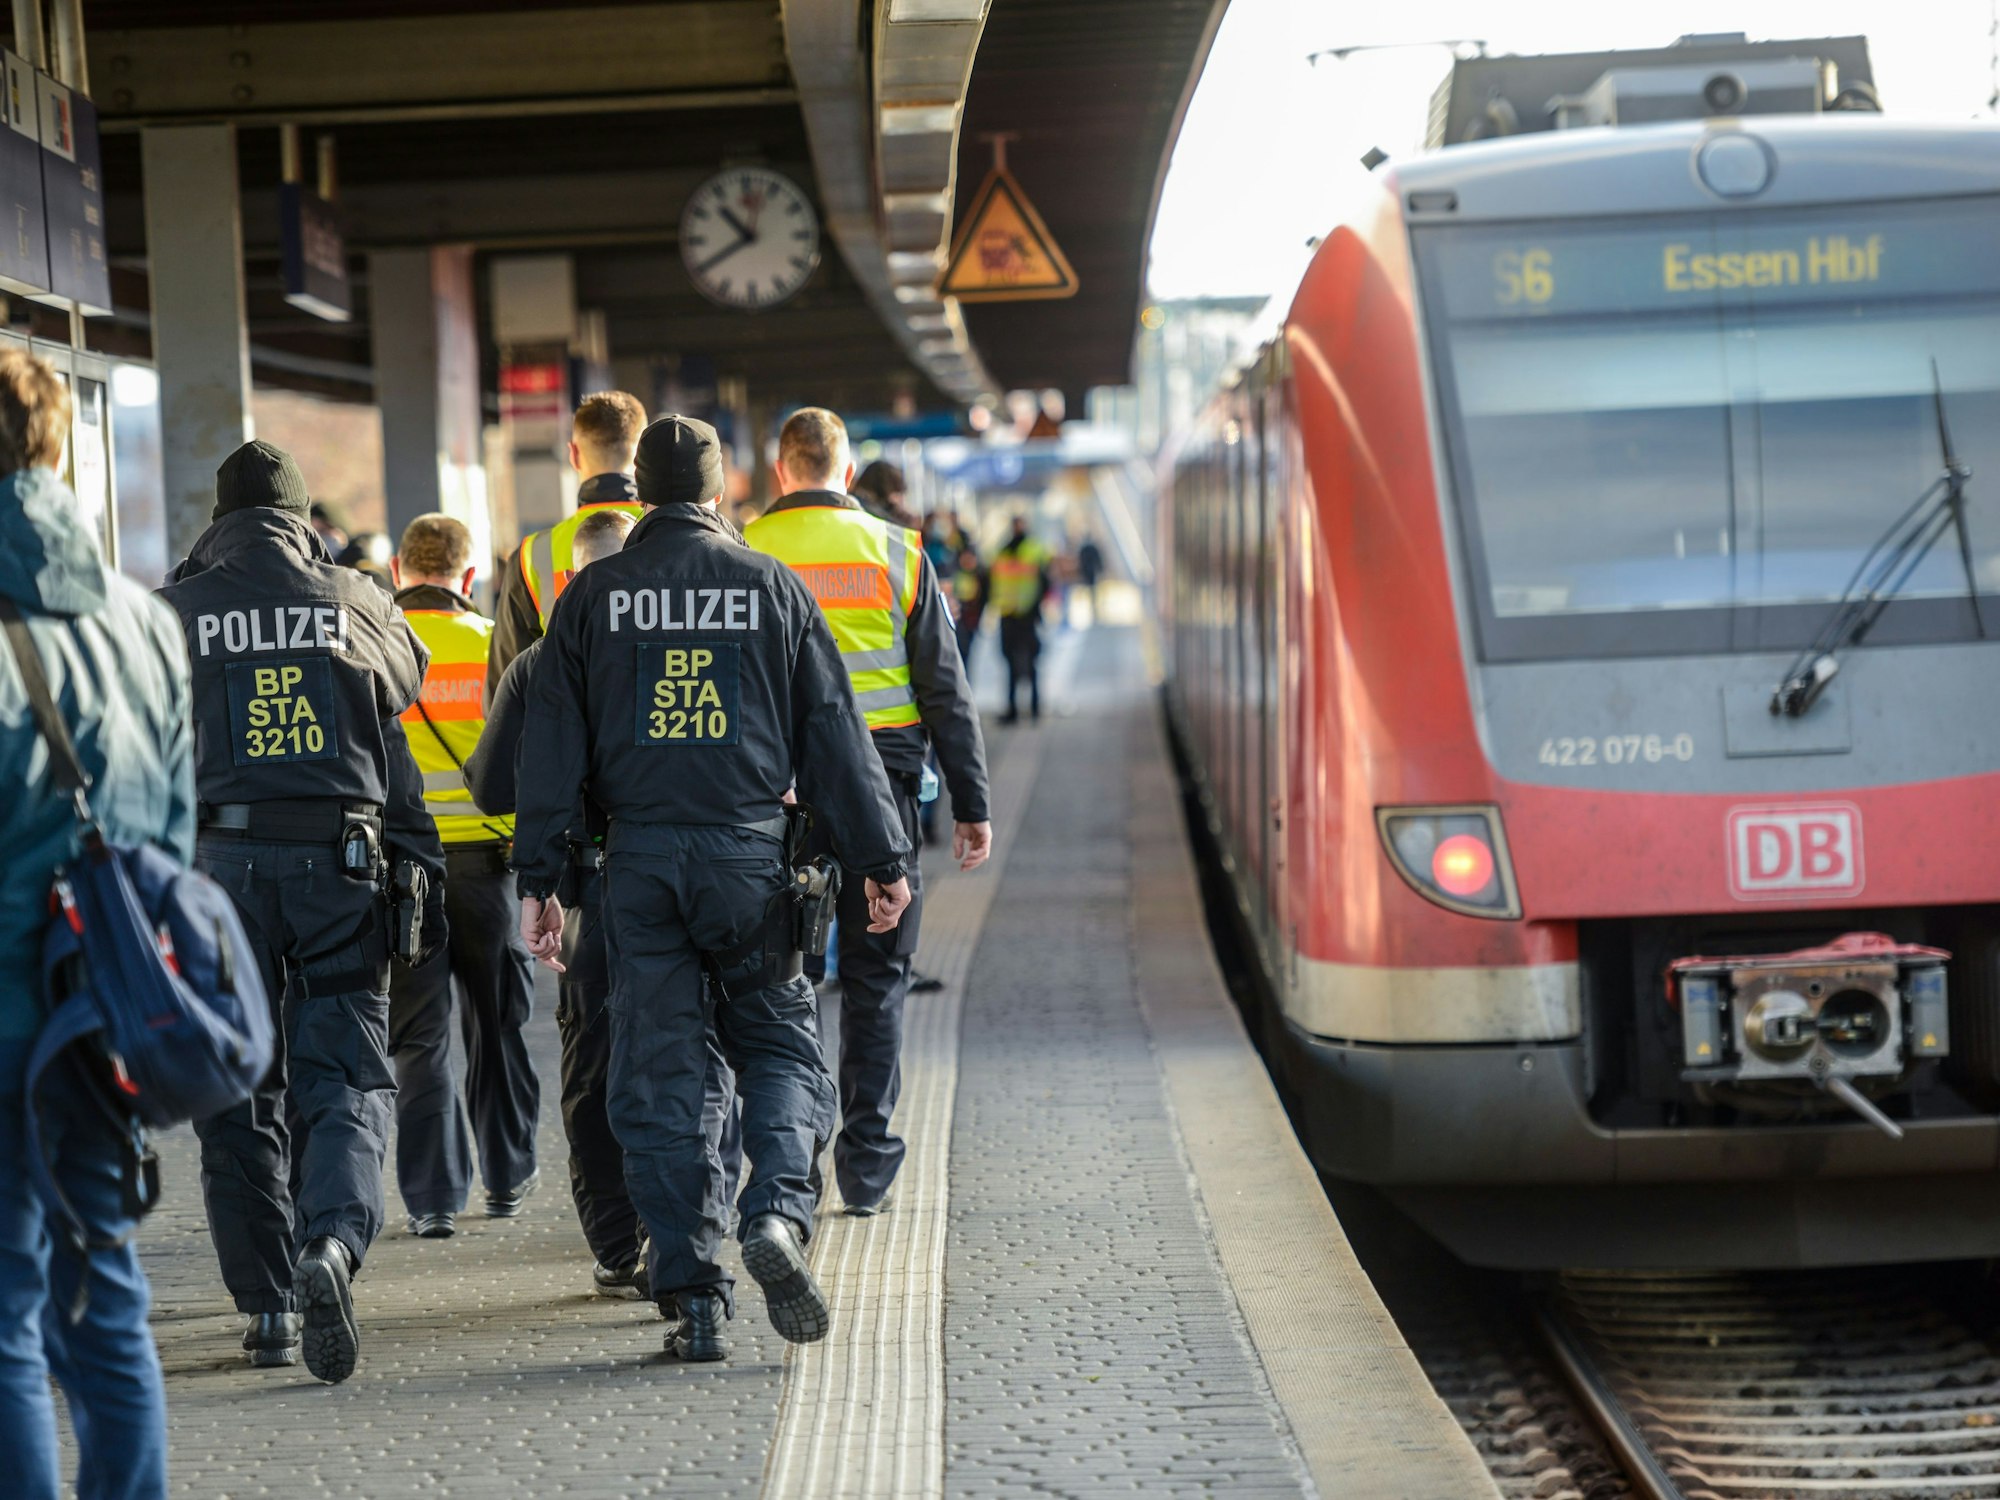 Polizei an einem Zug am Bahnhof Köln Messe/Deutz.